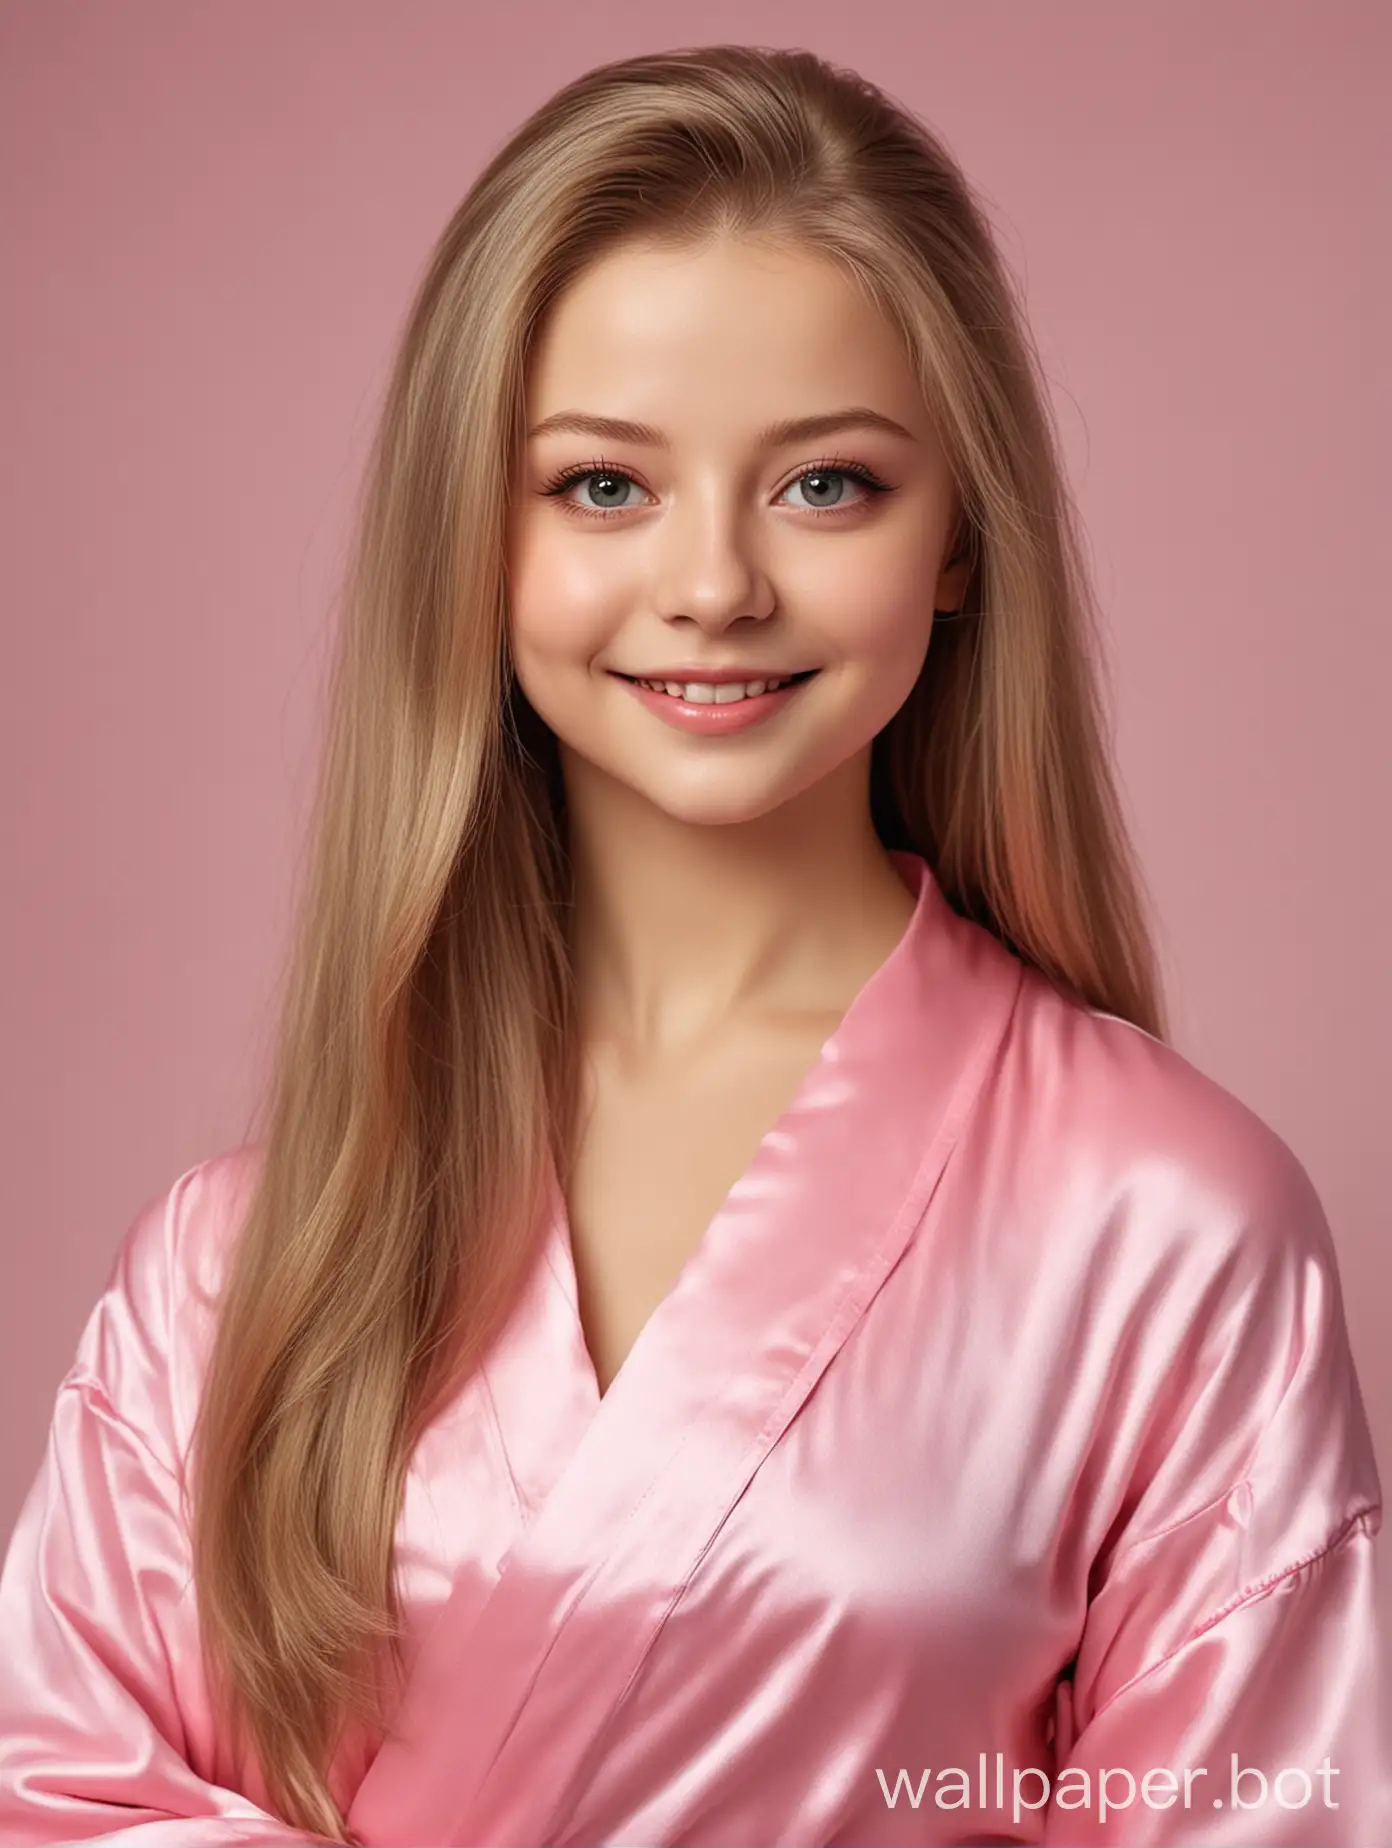 Реалистичная милашка Юлия Липницкая с длинными прямыми шелковистыми волосами в розовом шелковом халате улыбается